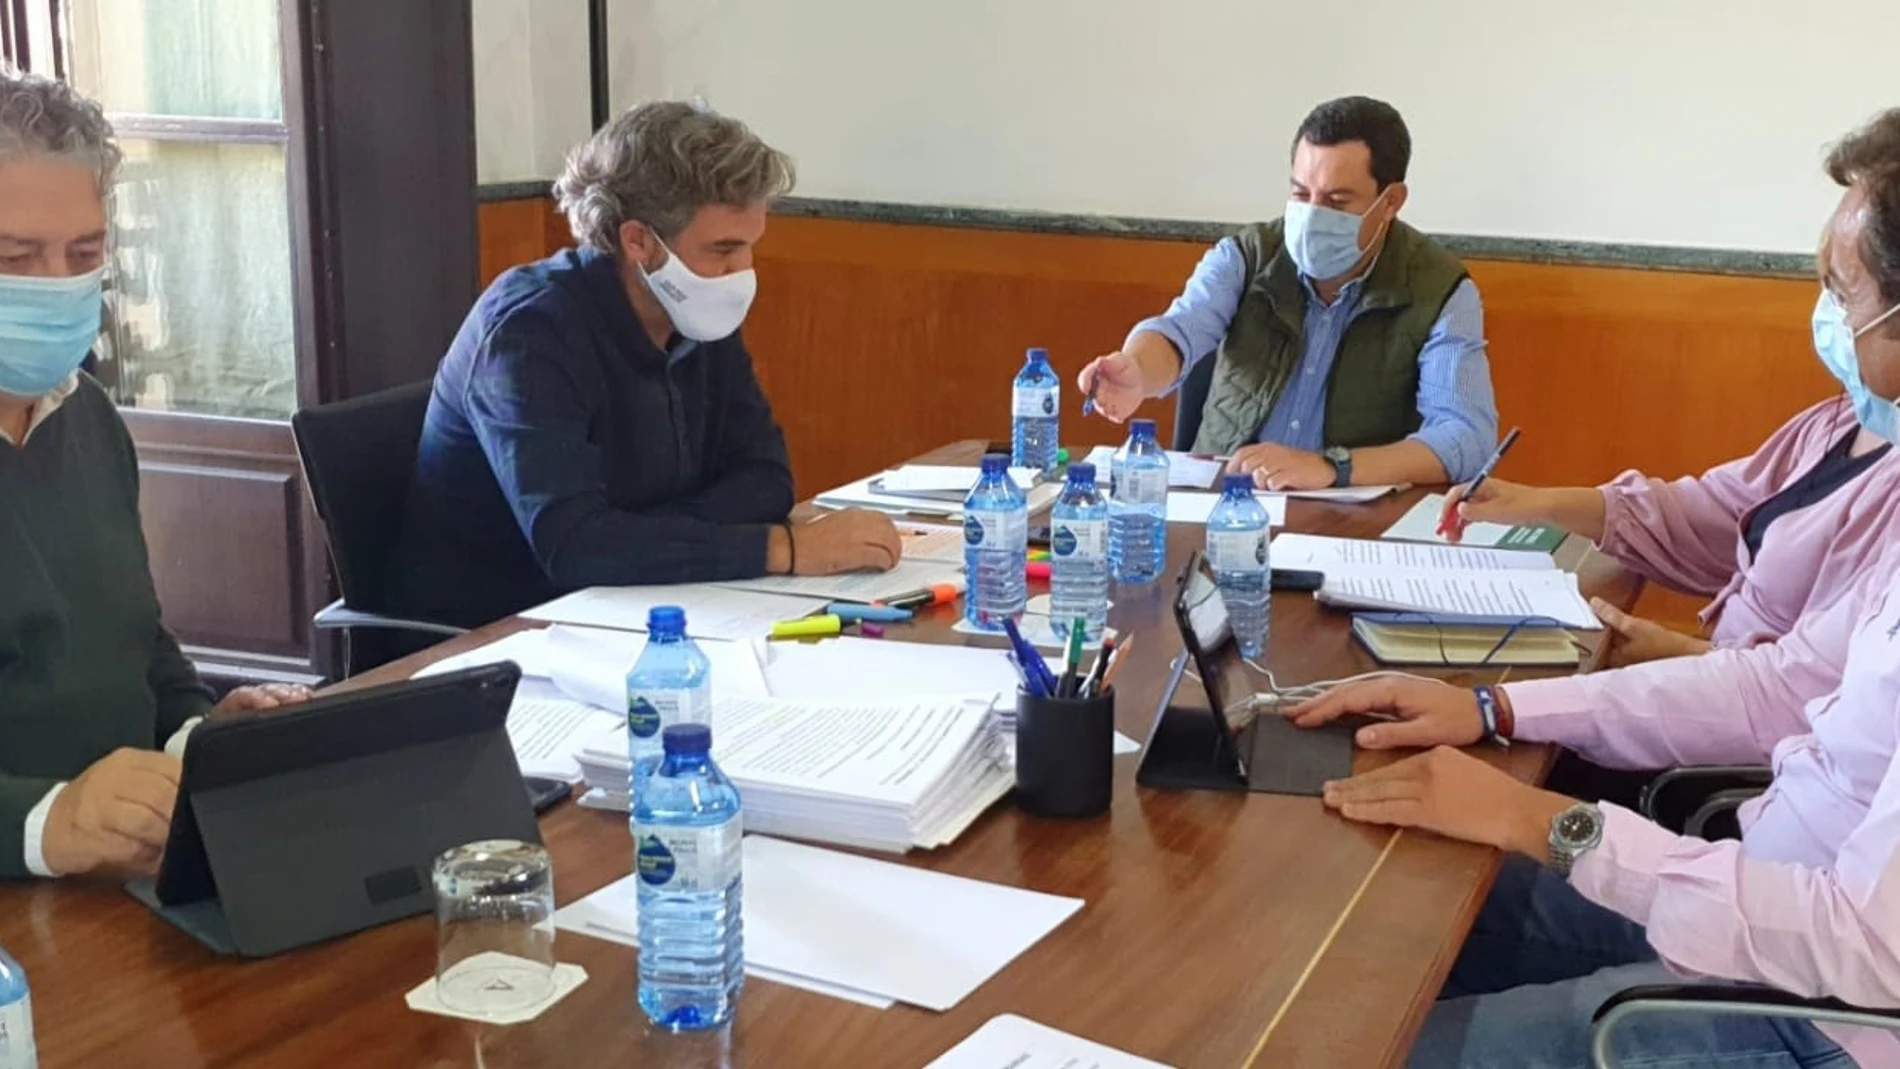 El presidente de la Junta de Andalucía, Juanma Moreno, en una reunión con su equipo de trabajo el fin de semana previo a su primer Debate sobre el estado de la Comunidad como presidente